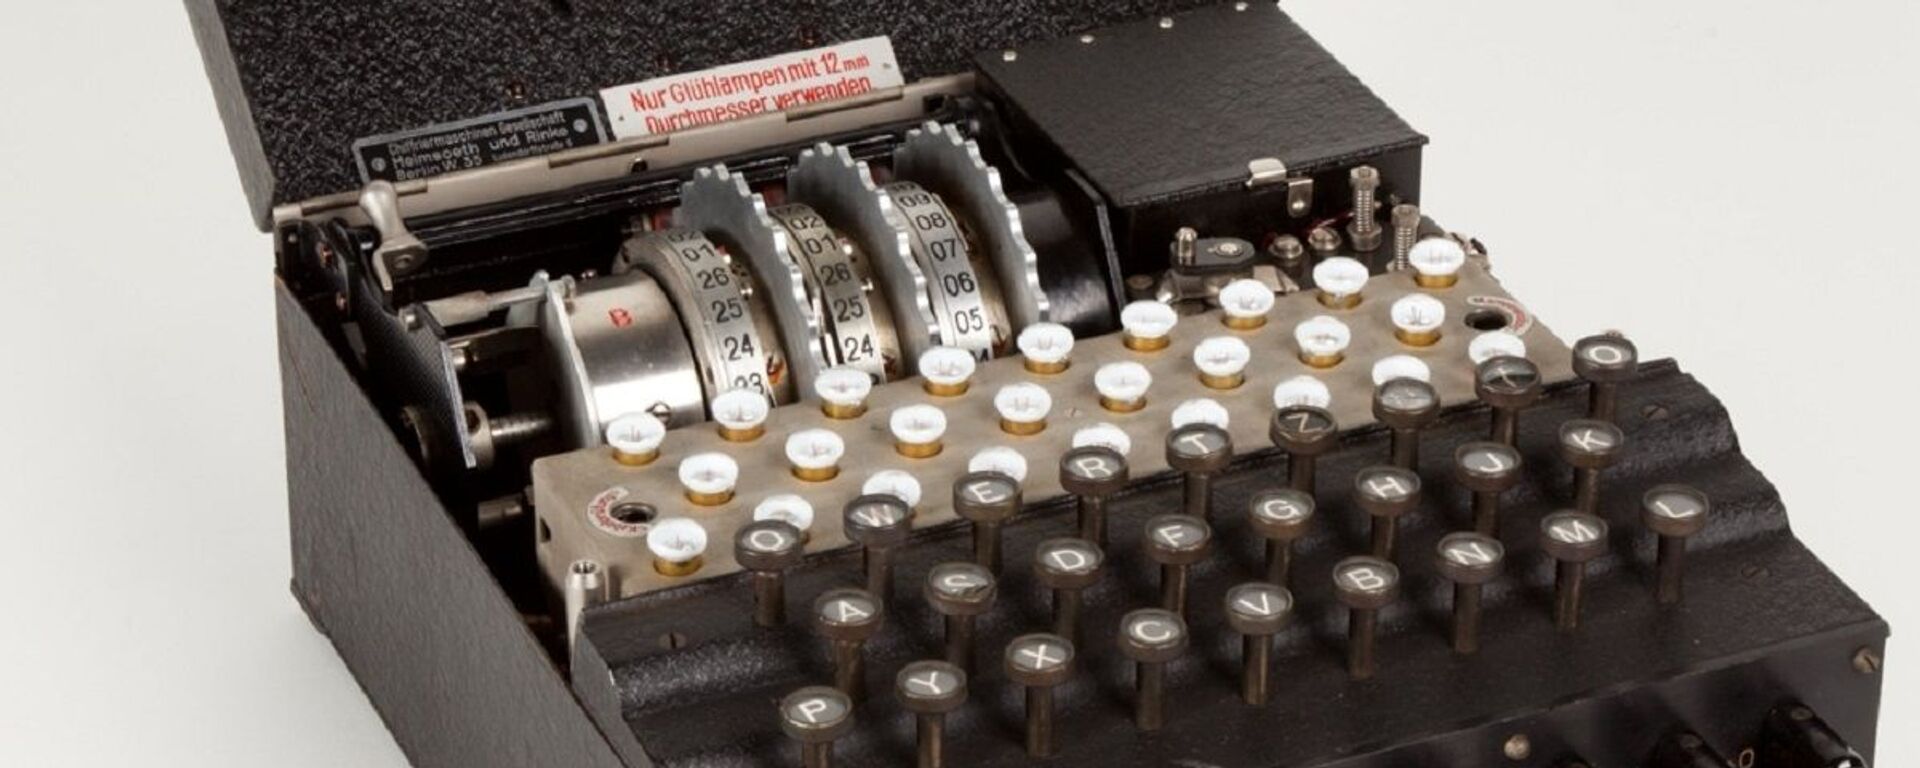 La máquina Enigma  - Sputnik Mundo, 1920, 05.12.2020